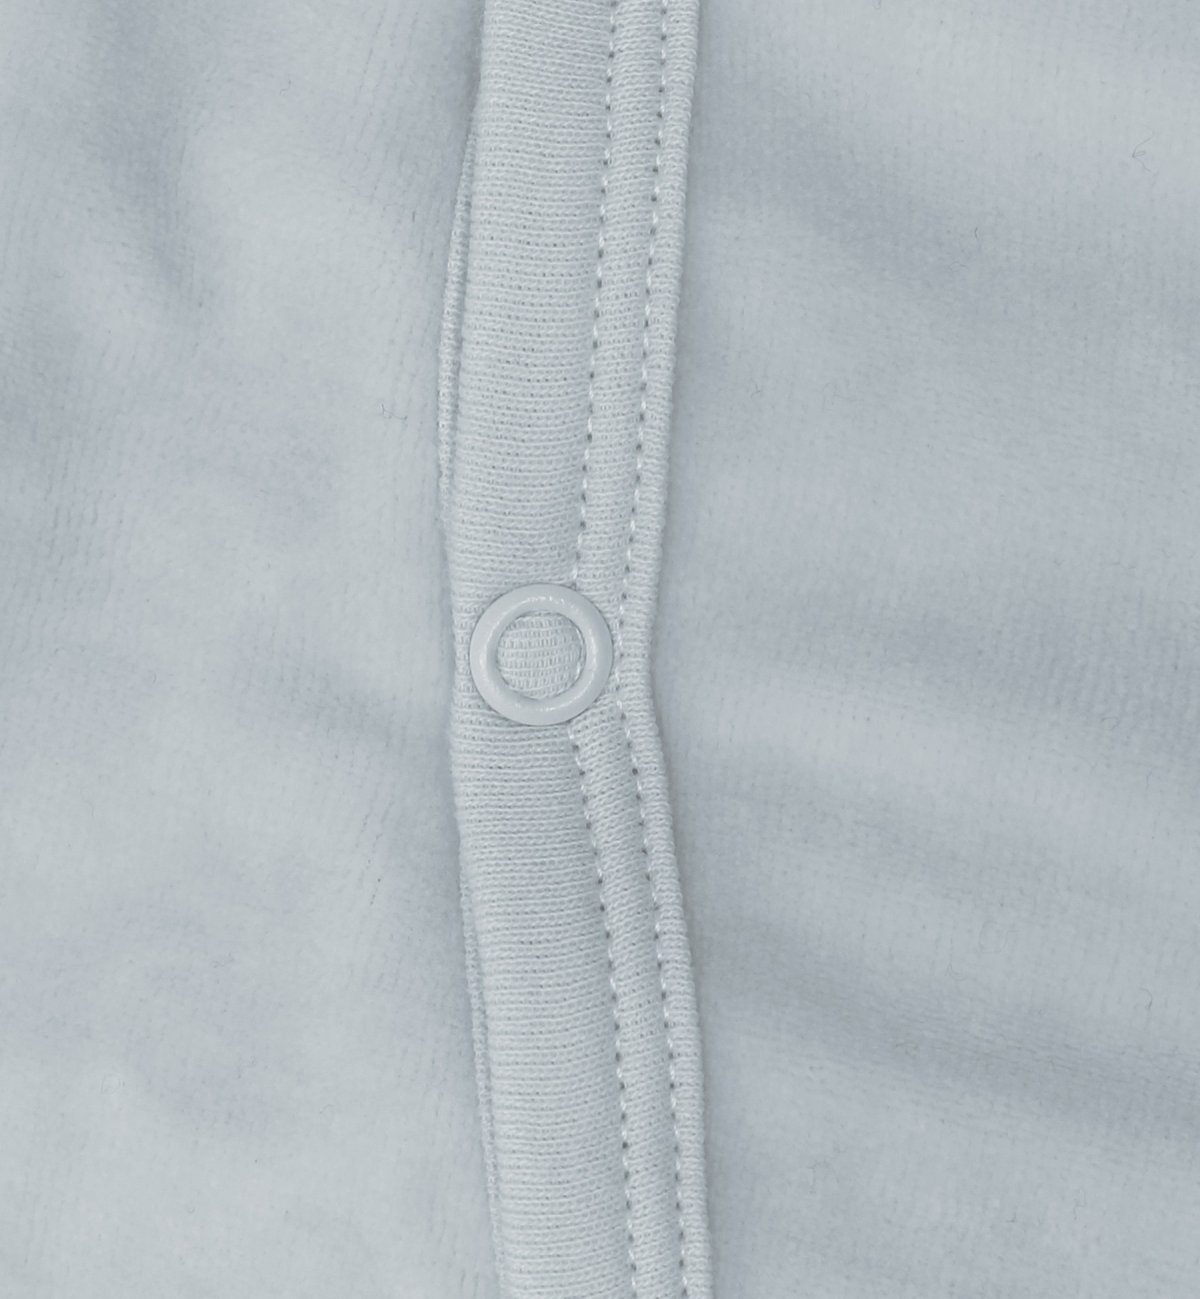 Pyjama bébé en Coton Bio avec motifs plumes blanches - Kadolis